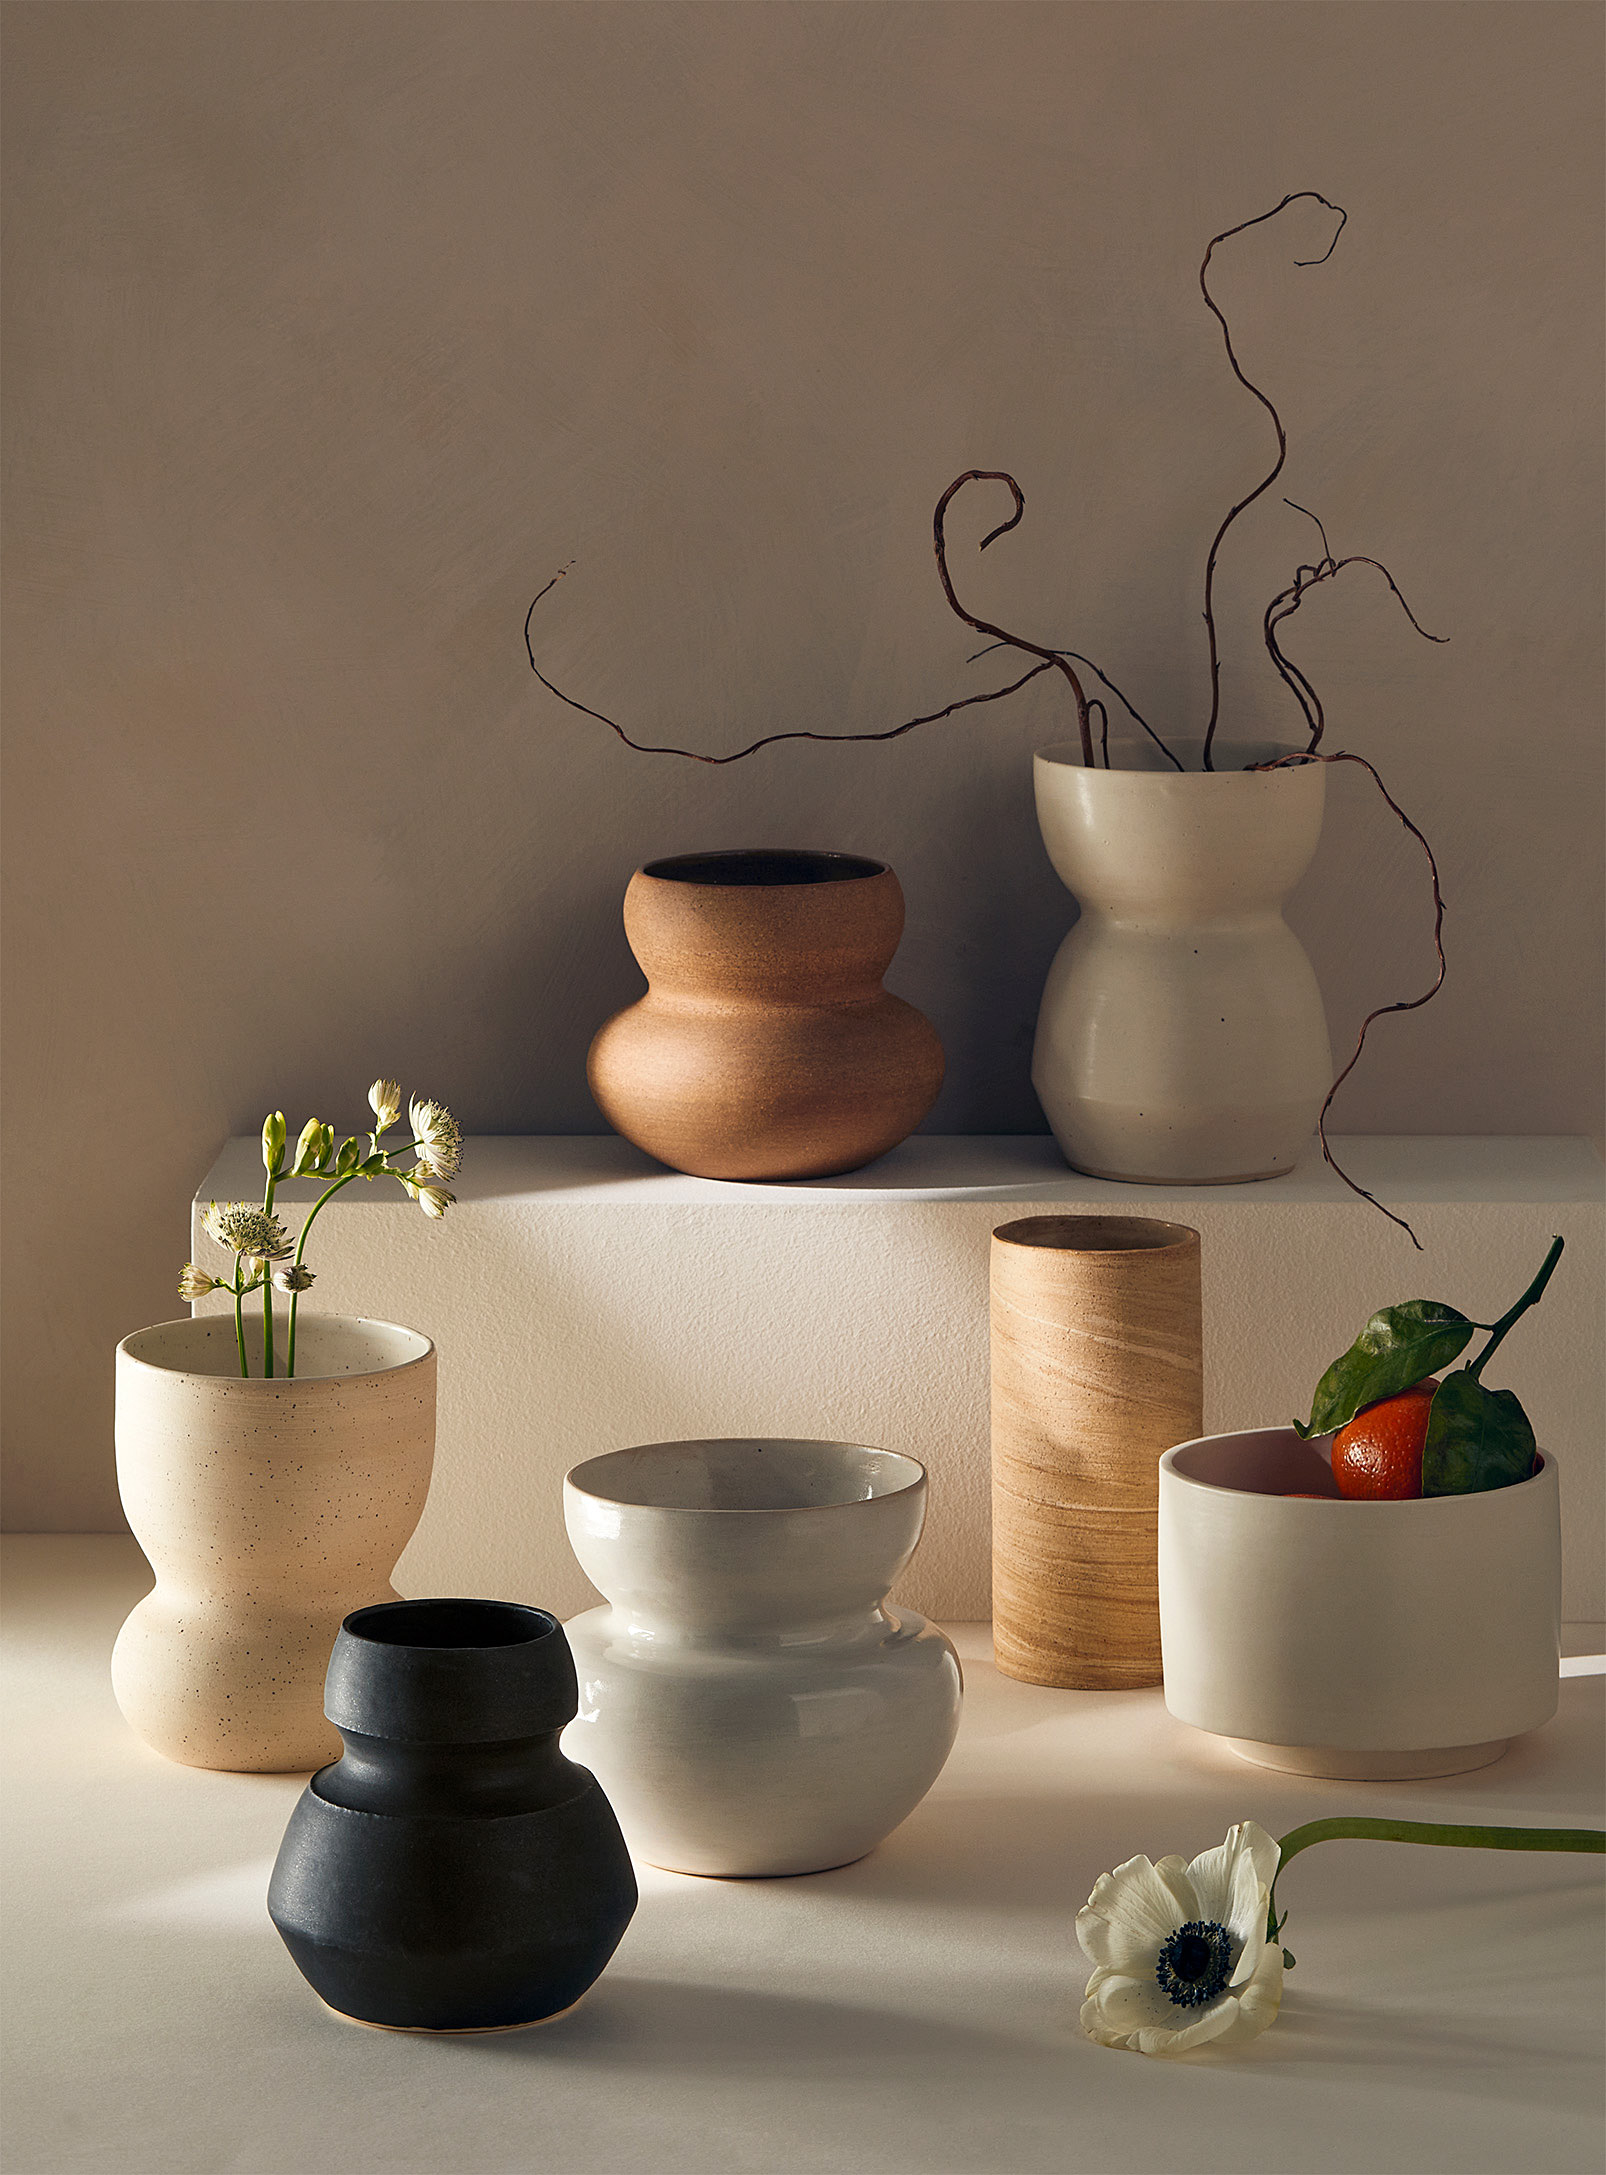 Ceramics by LJM - Le vase en grès no 03 15,25 cm de hauteur